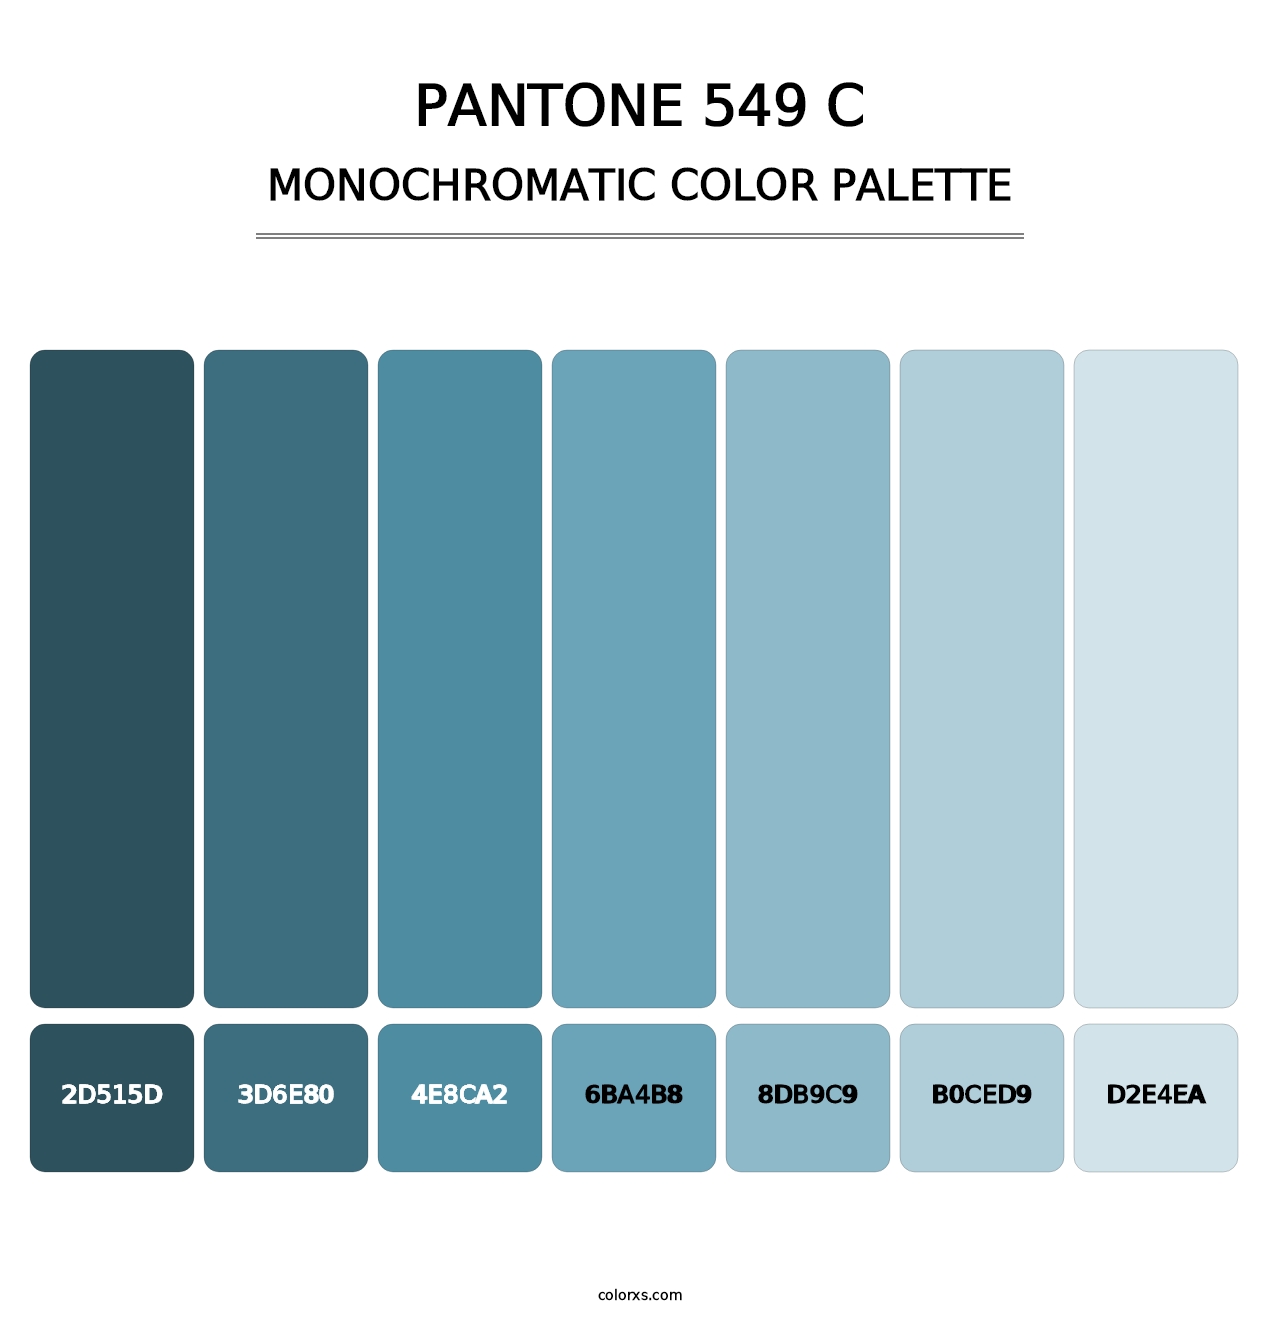 PANTONE 549 C - Monochromatic Color Palette